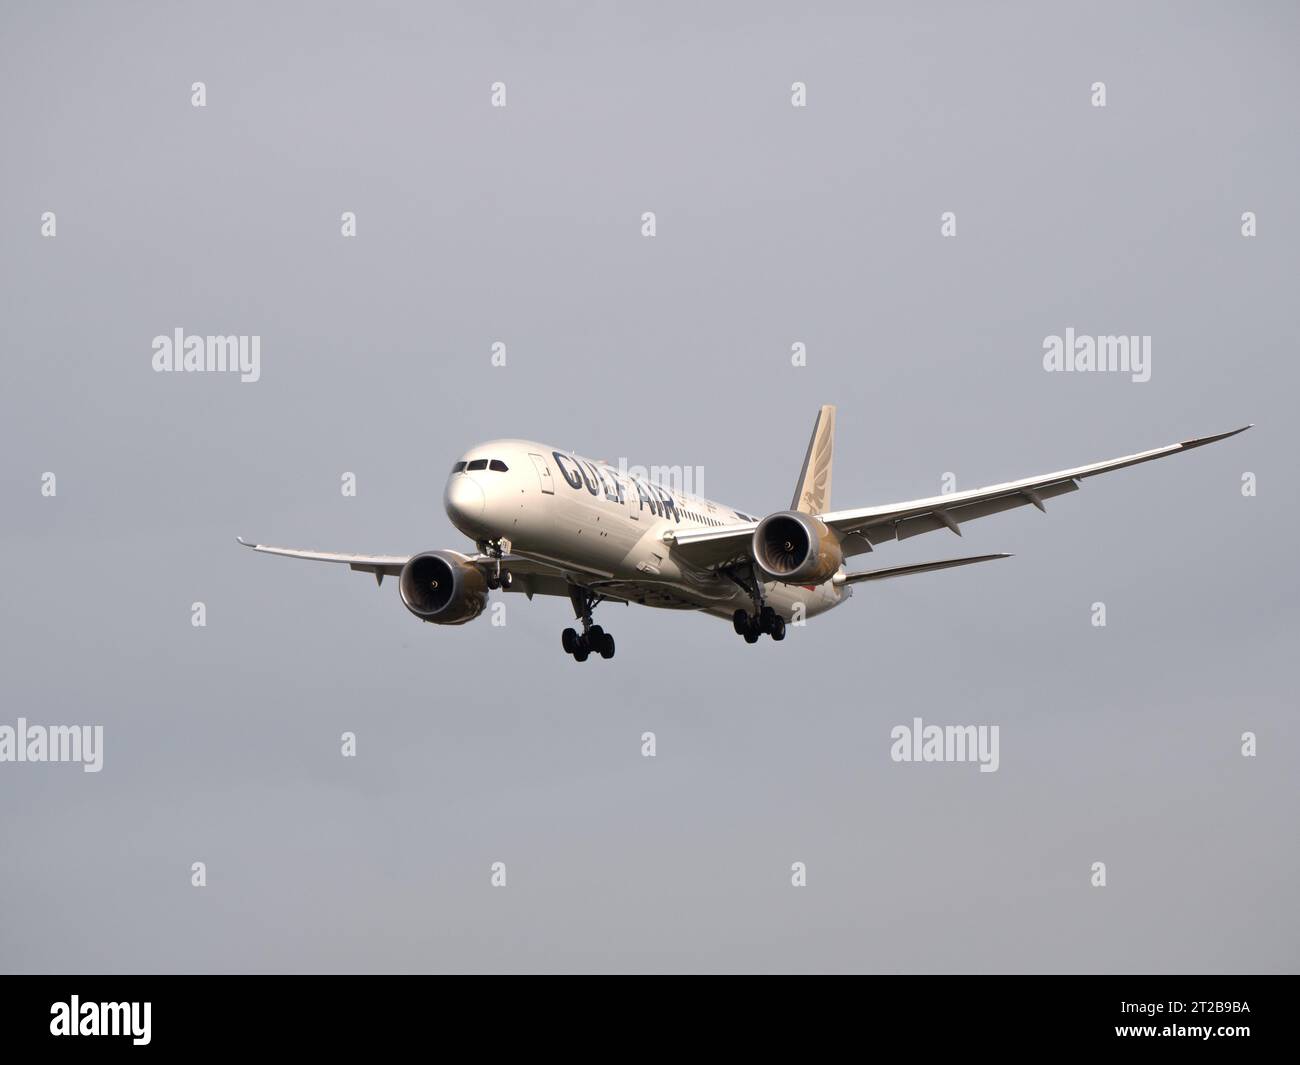 Aeroporto di Londra Heathrow Hounslow Gulf Air portaerei del Bahrain, aerei che si avvicinano alla pista di Heathrow Foto Stock